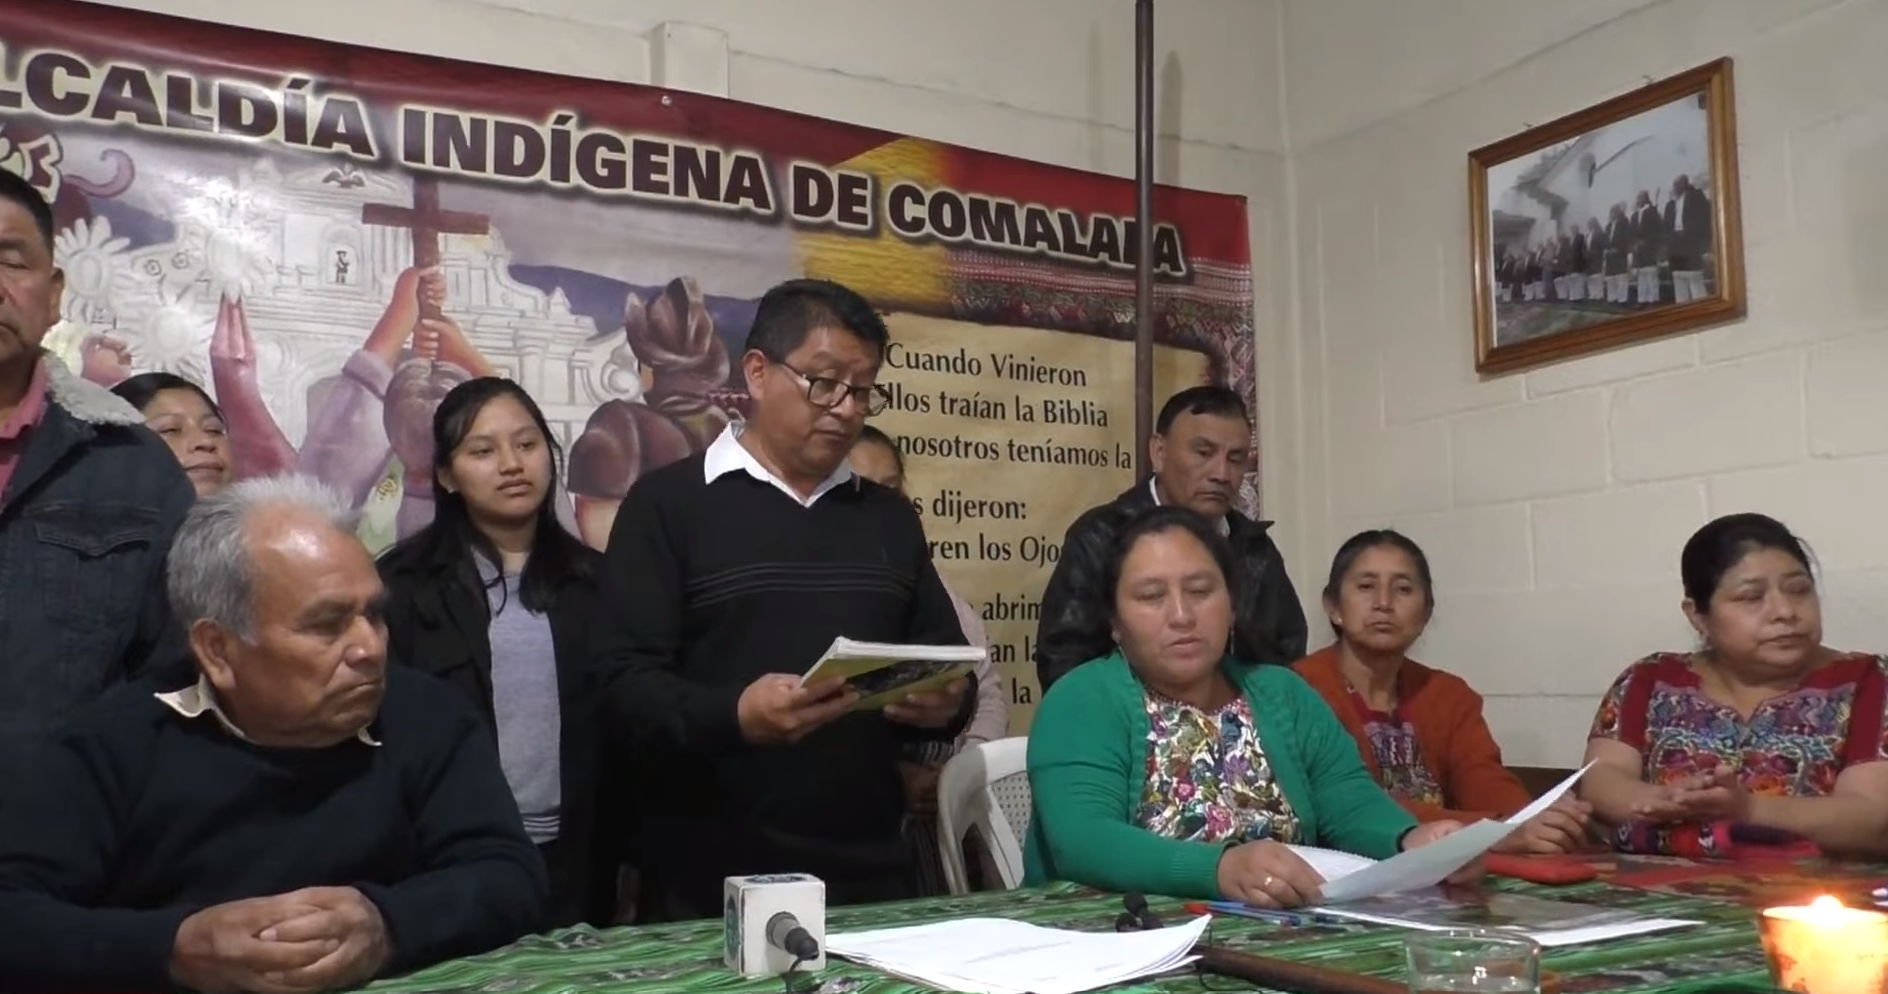 Autoridades de San Juan Comalapa señalaron que se unen al llamado de los demás pueblos. (Foto Prensa Libre: Captura de pantalla)